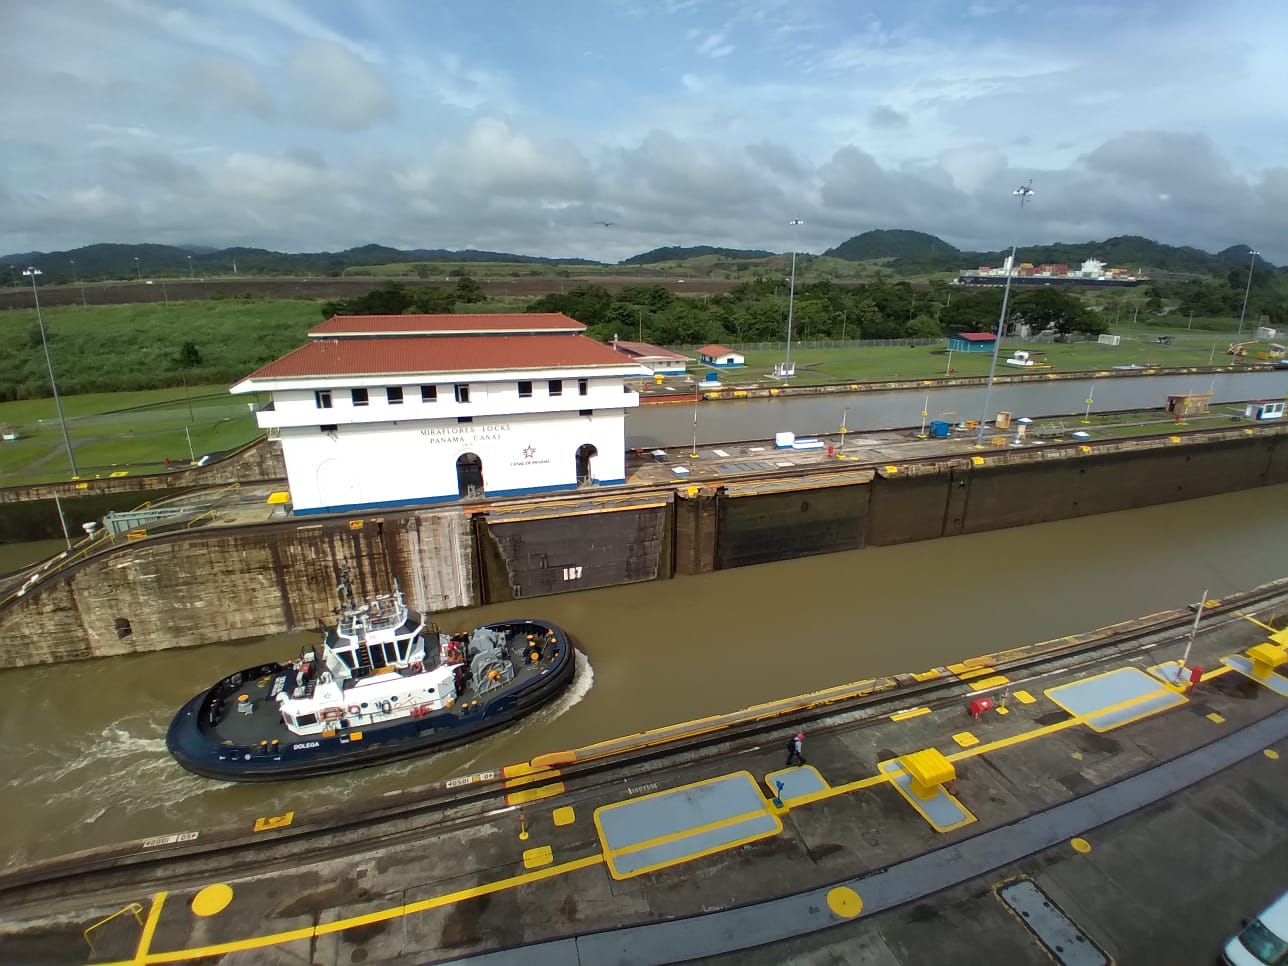 Canal de Panamá: 107 años conectando al mundo